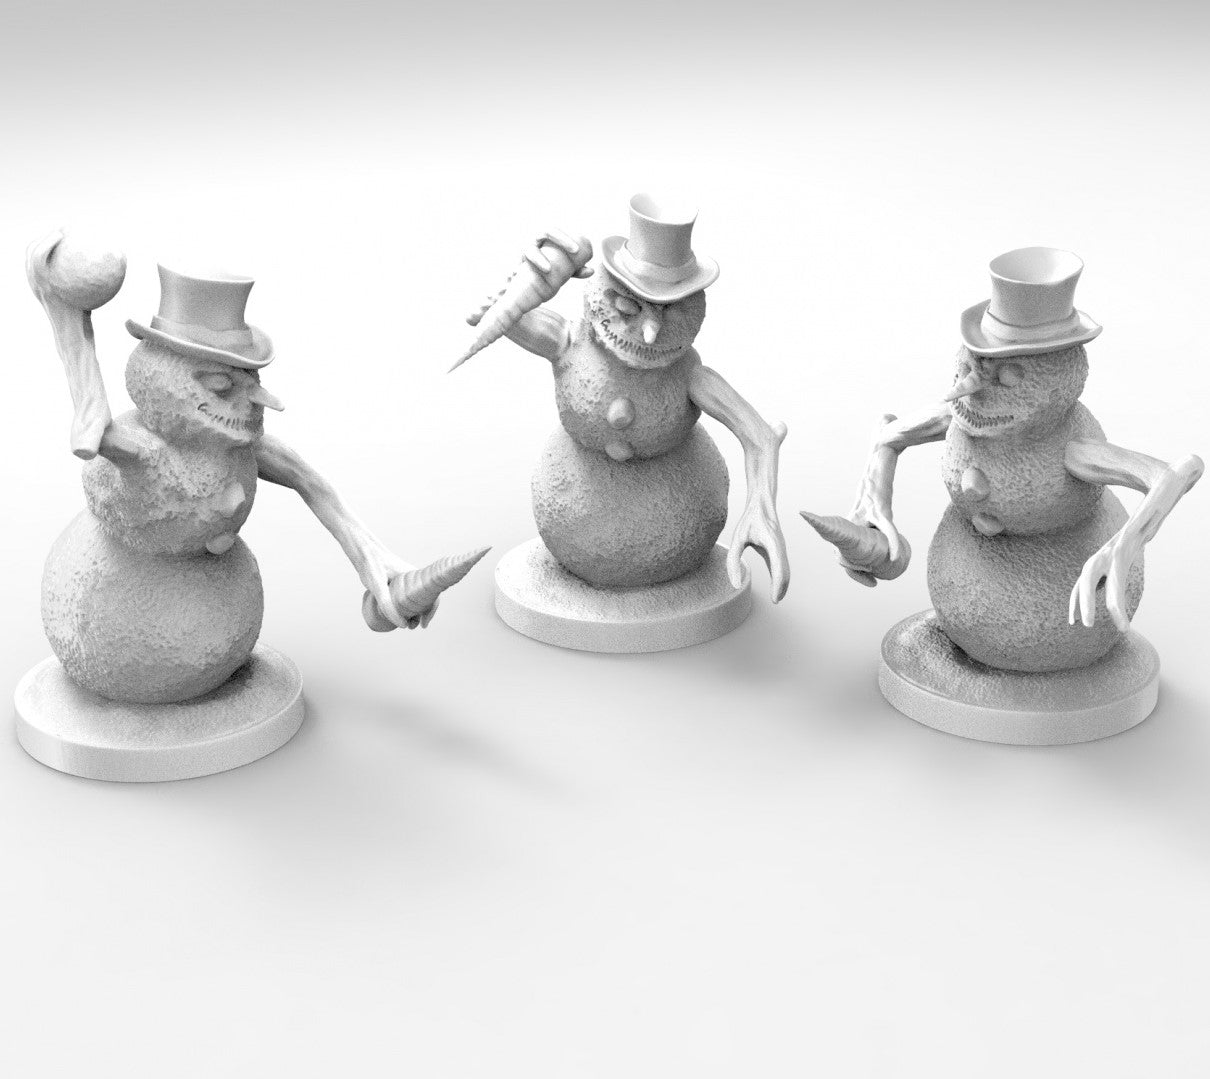 Impresión 3D Deposito de Gnomos: Evil Snowman (3) - Deposito de Gnomos